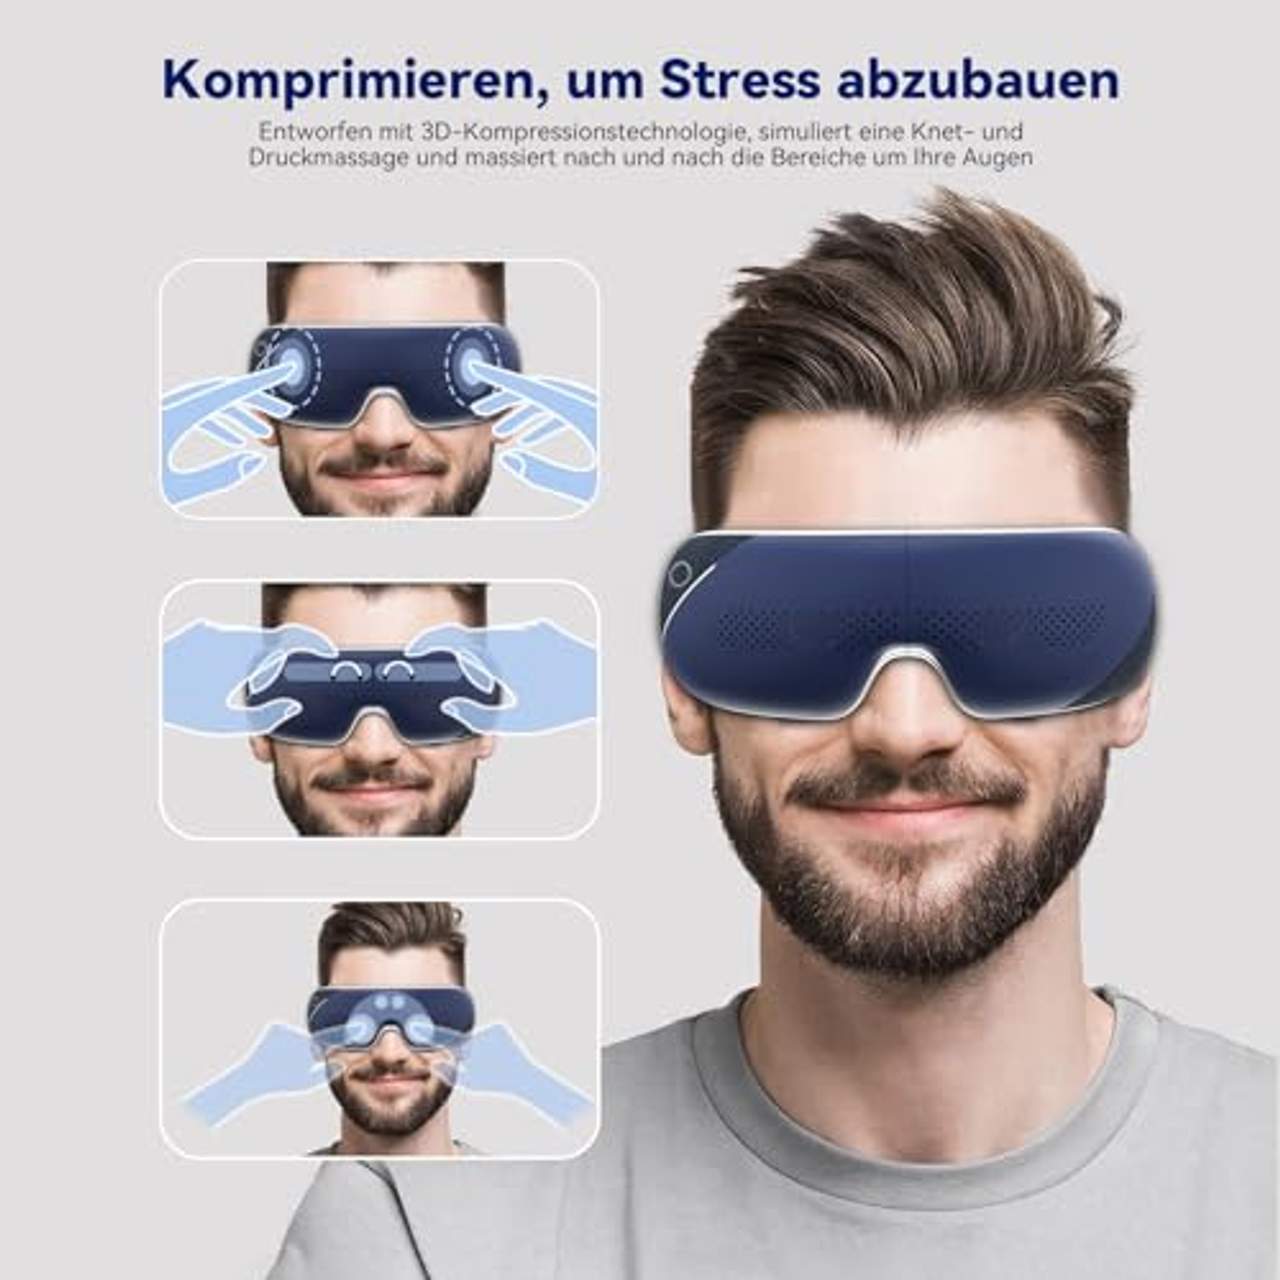 EEBBL Augenmassagegerät mit Wärme und Bluetooth-Musik kann trockene Augen